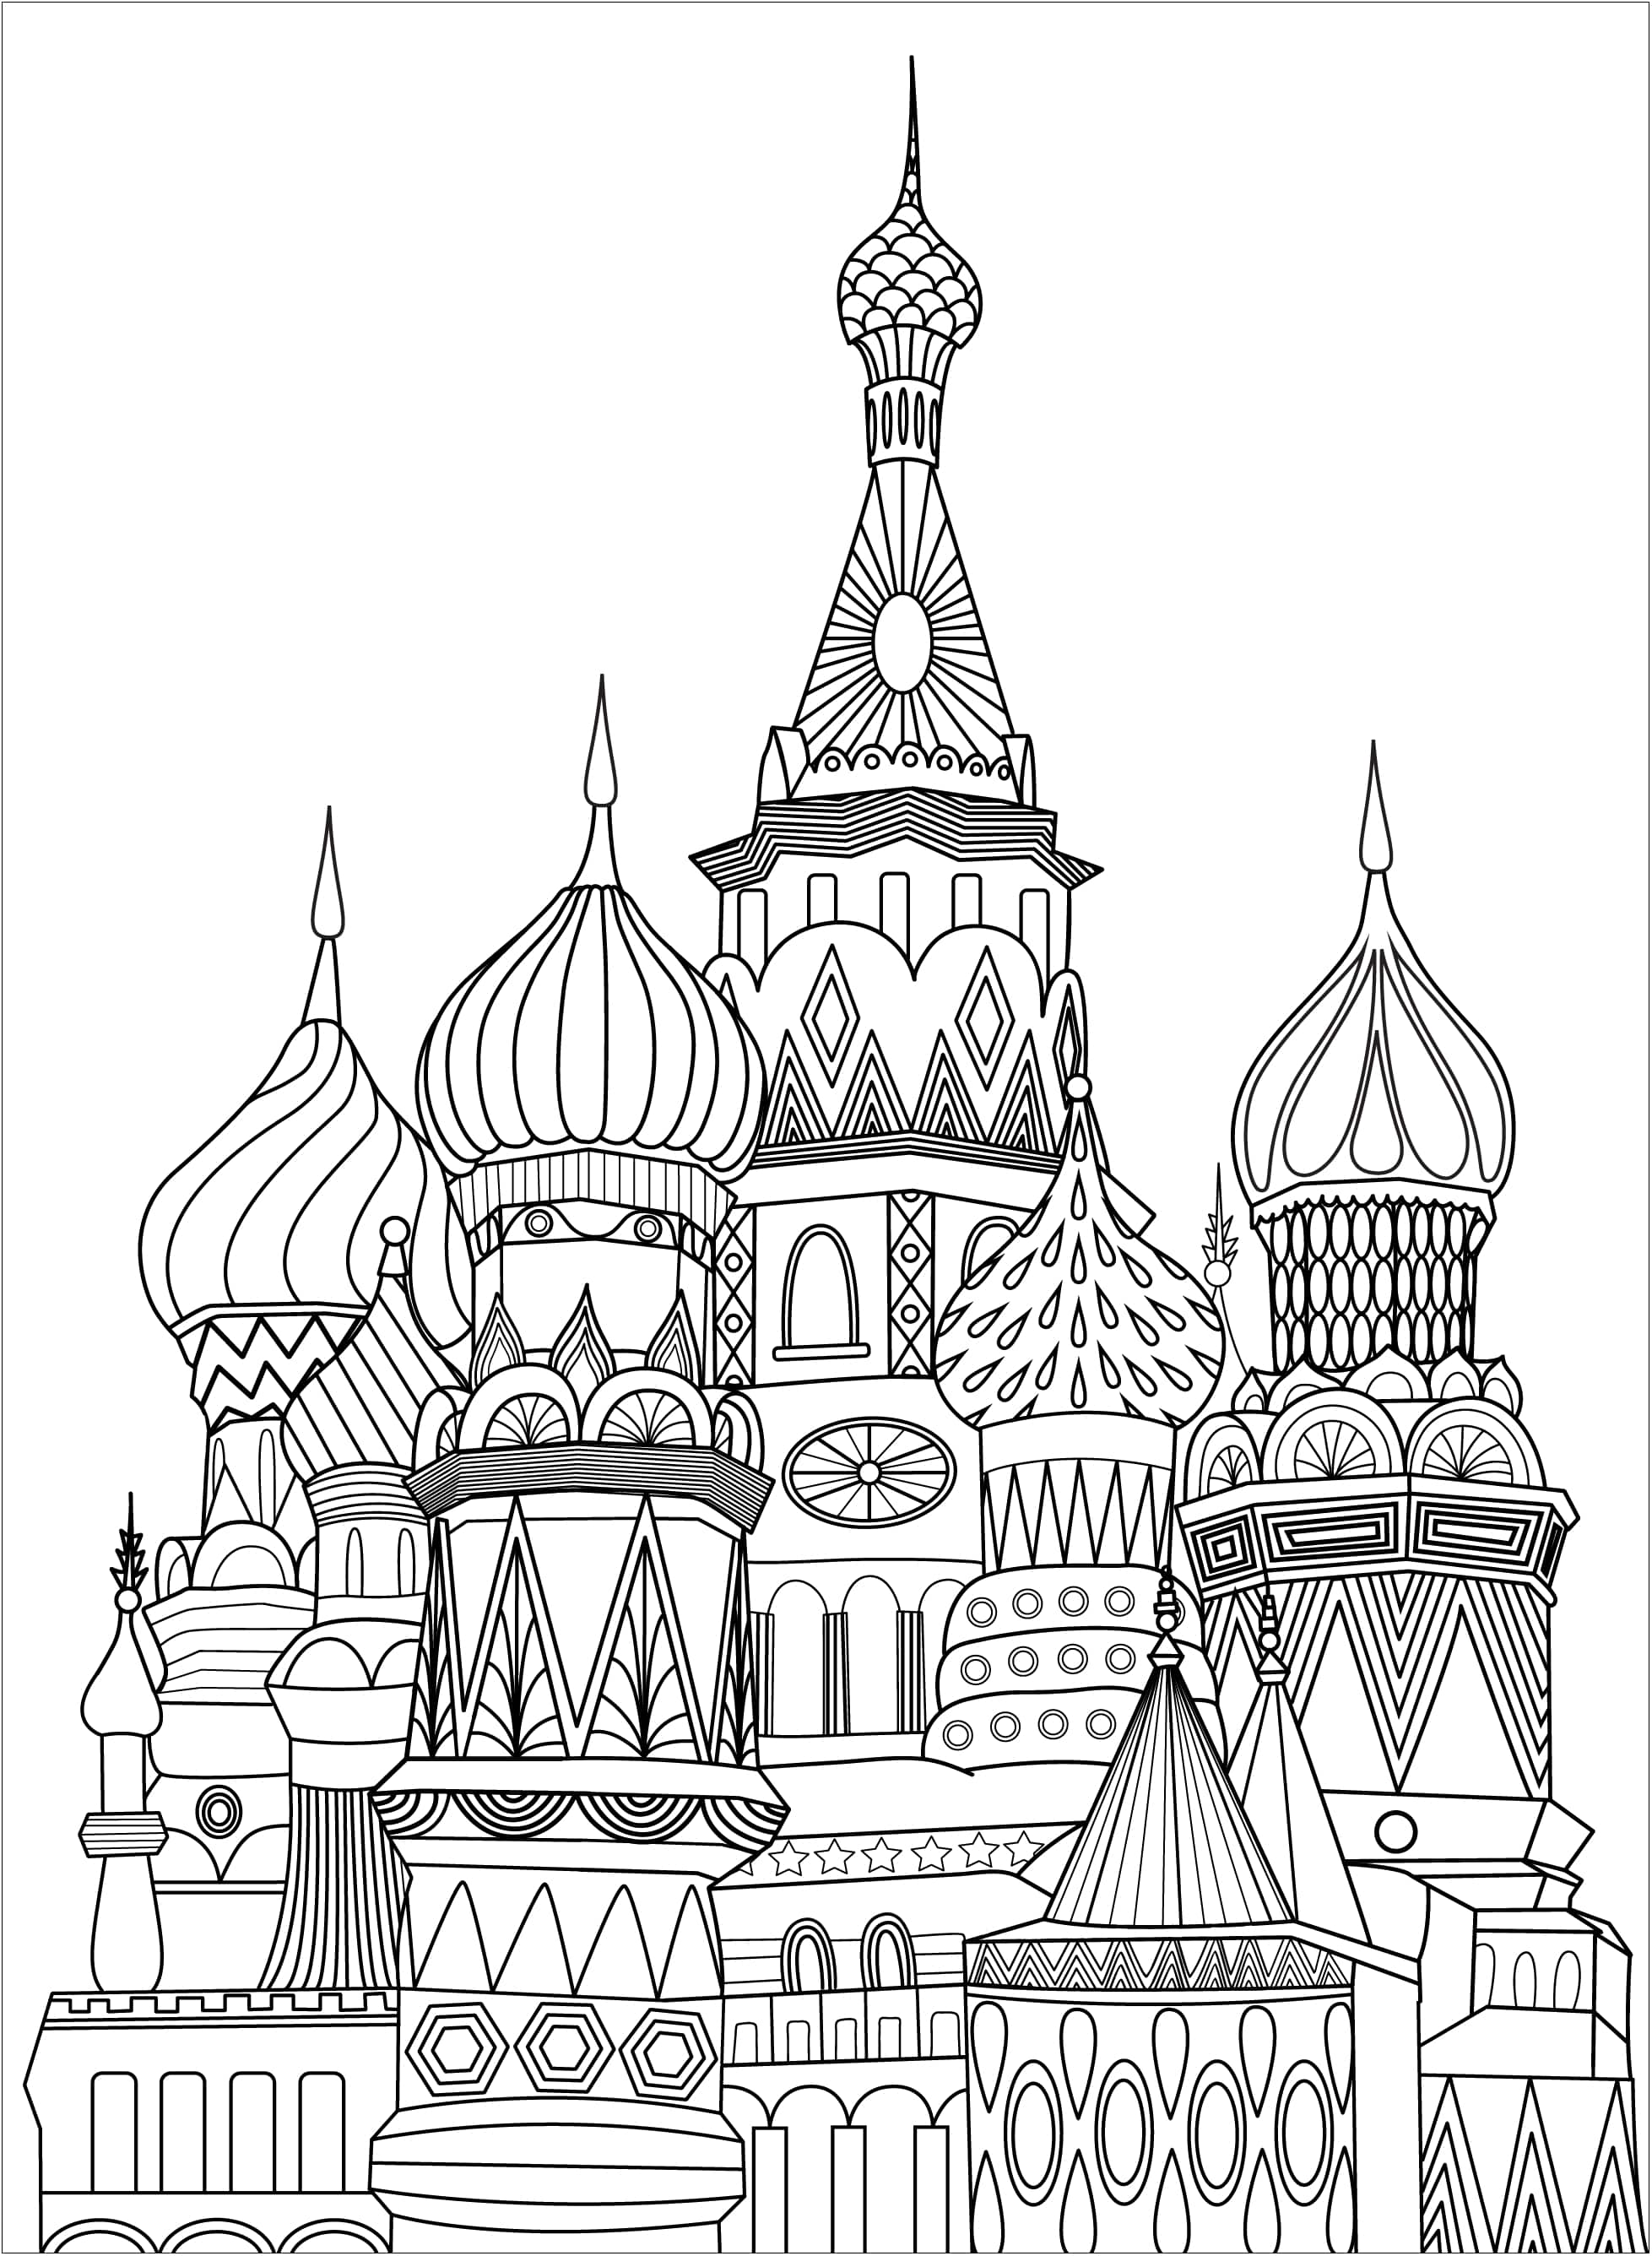 Página para colorear única que representa la Plaza Roja de Moscú.  La Plaza Roja es una plaza abierta de Moscú adyacente a la fortaleza histórica y centro de gobierno conocido como el Kremlin.